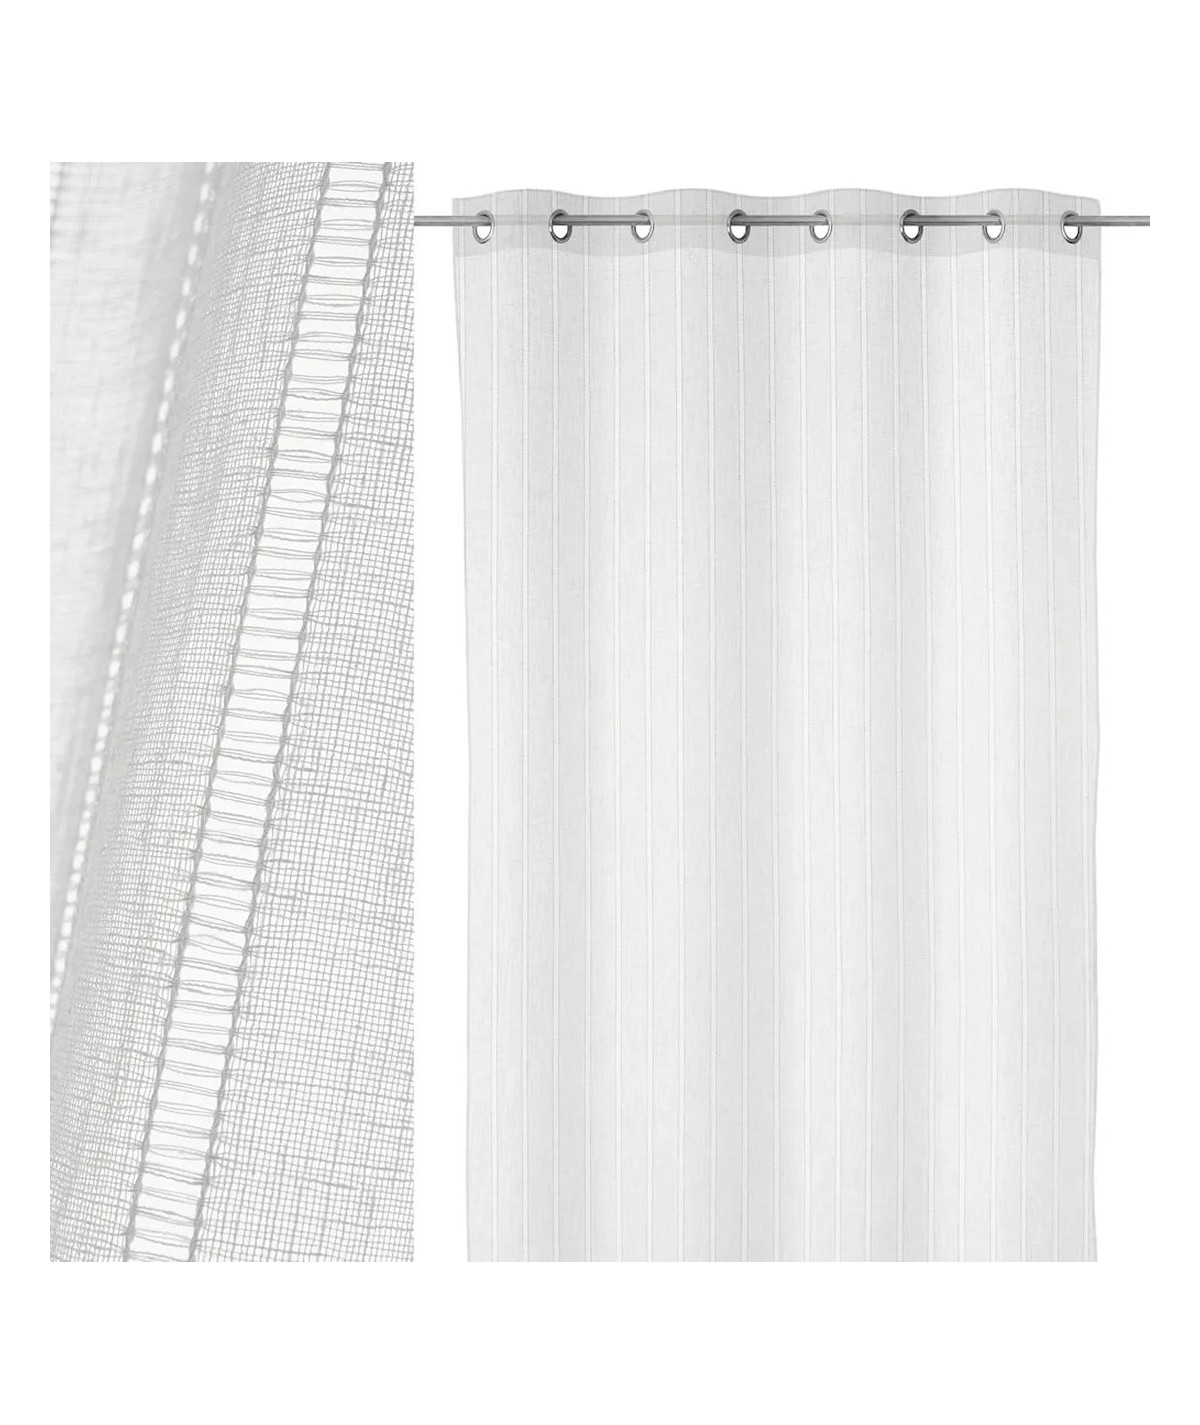 Lot de 2 voilages blanc à rayure 140x260cm - Collection Linen - Yesdeko